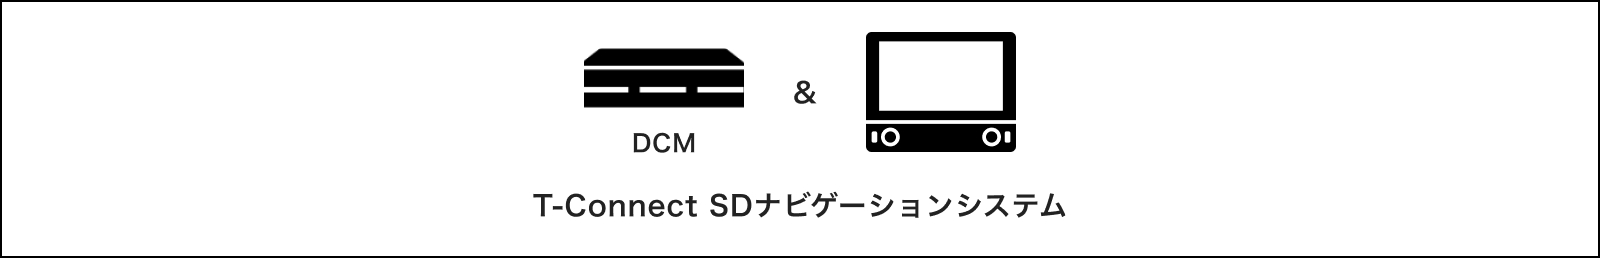 T-Connect SDナビゲーションシステム